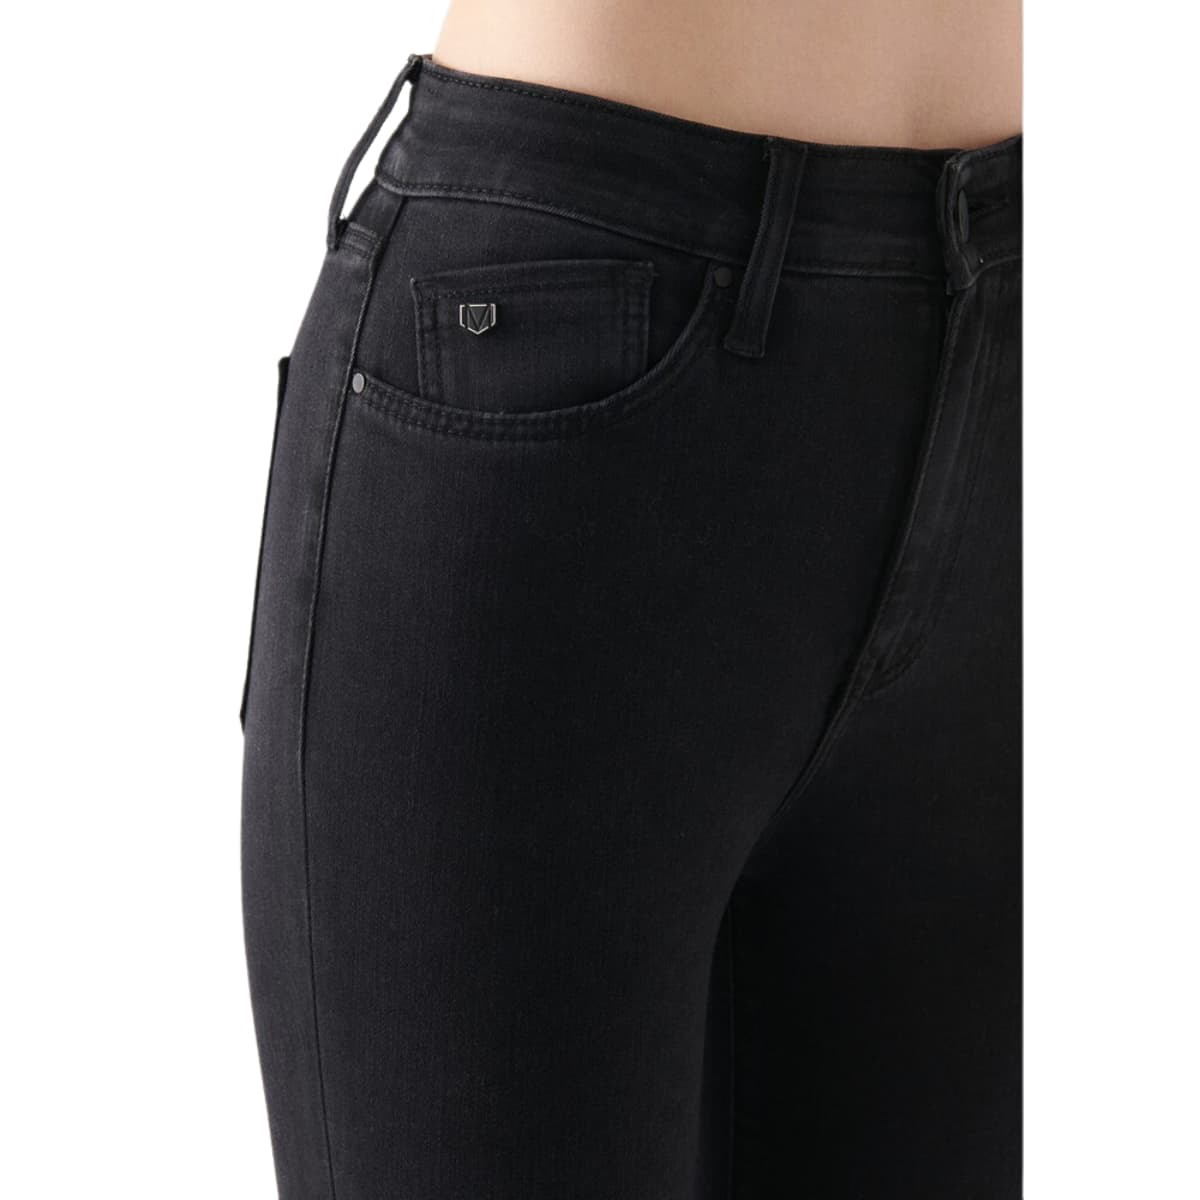 Mavi Acaip Move Kadın Siyah Kot Pantolon (101065-32045)